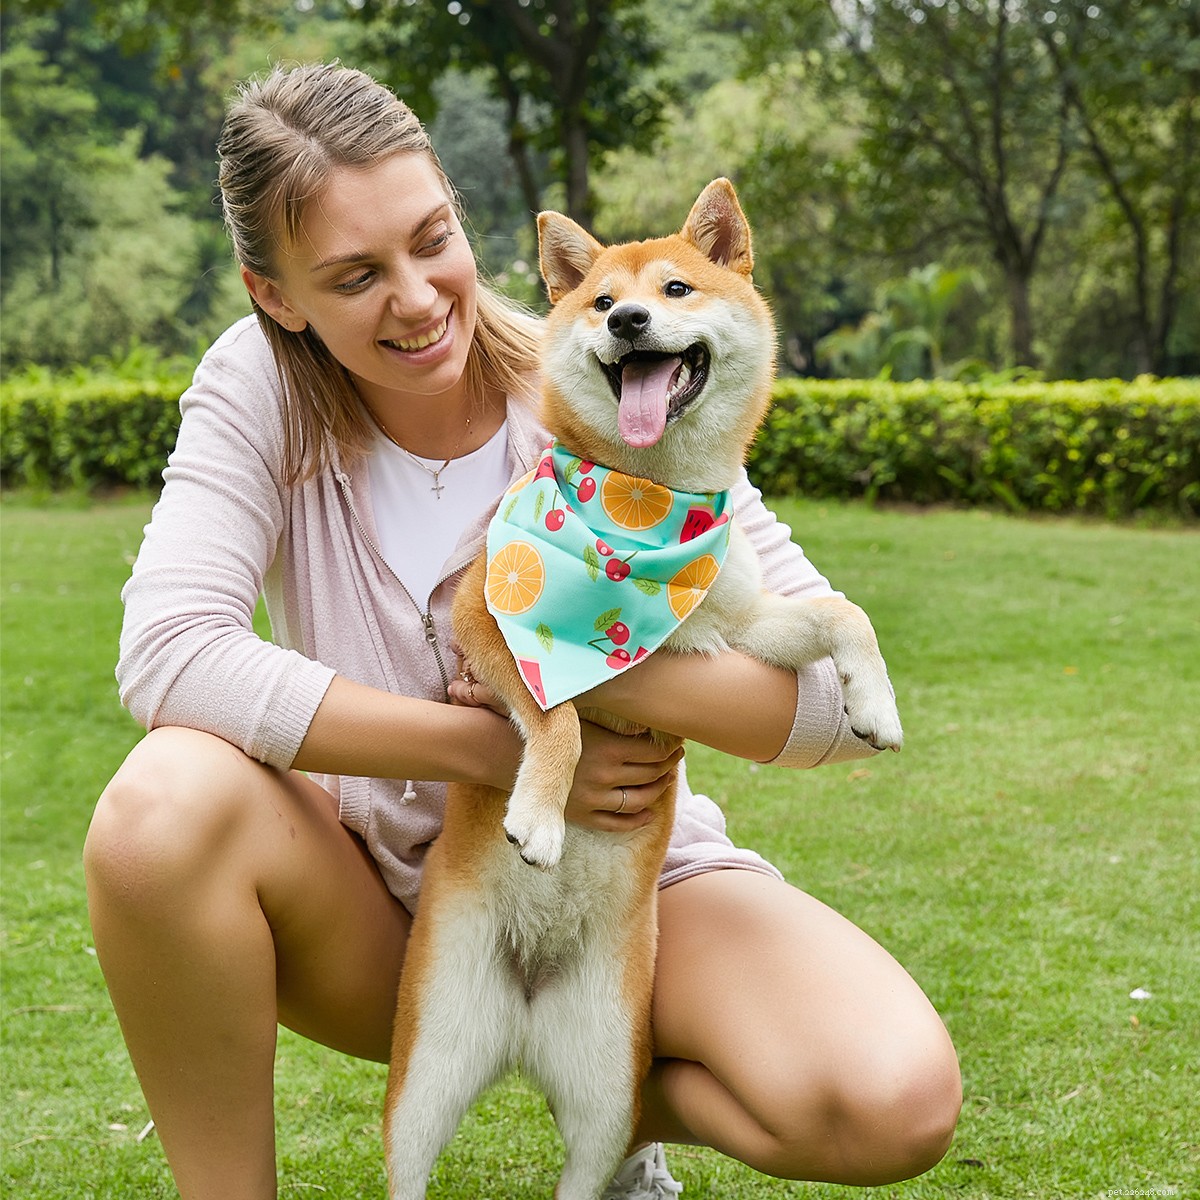 개 목걸이를 부적절하게 사용하면 다음 5가지 주요 위험이 발생할 수 있습니다.